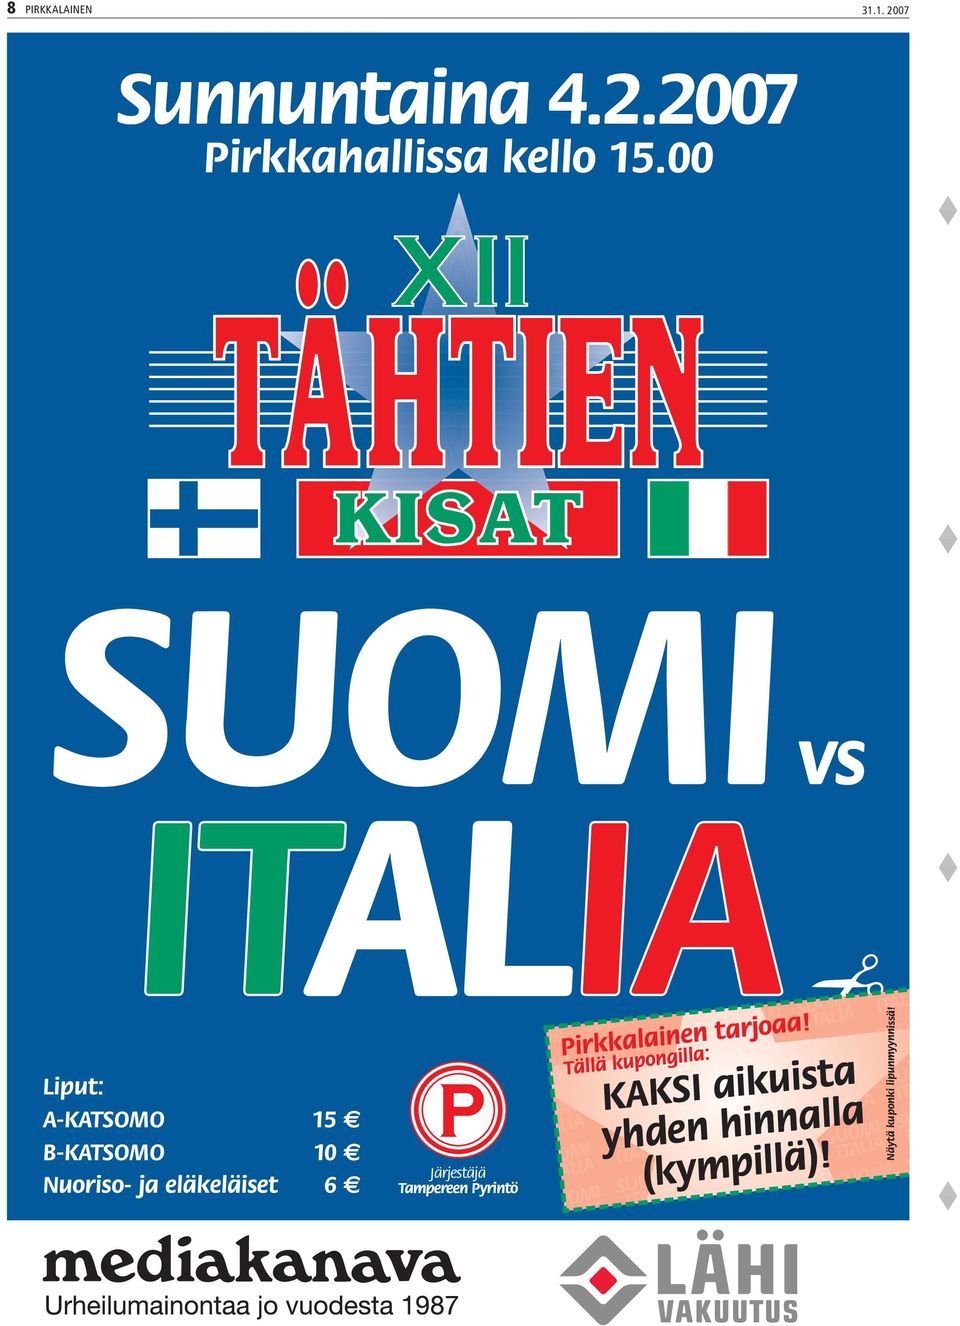 SUOMI ITALIA ITALIA ITALIA SUOM vs vs ALIA ITALIA ITALI UOMI SUOMI ITALIA ITALIA ITALIA SUOM vs vs TALIA ITALIA ITAL SUOMI SUOMI ITALIA ITALIA